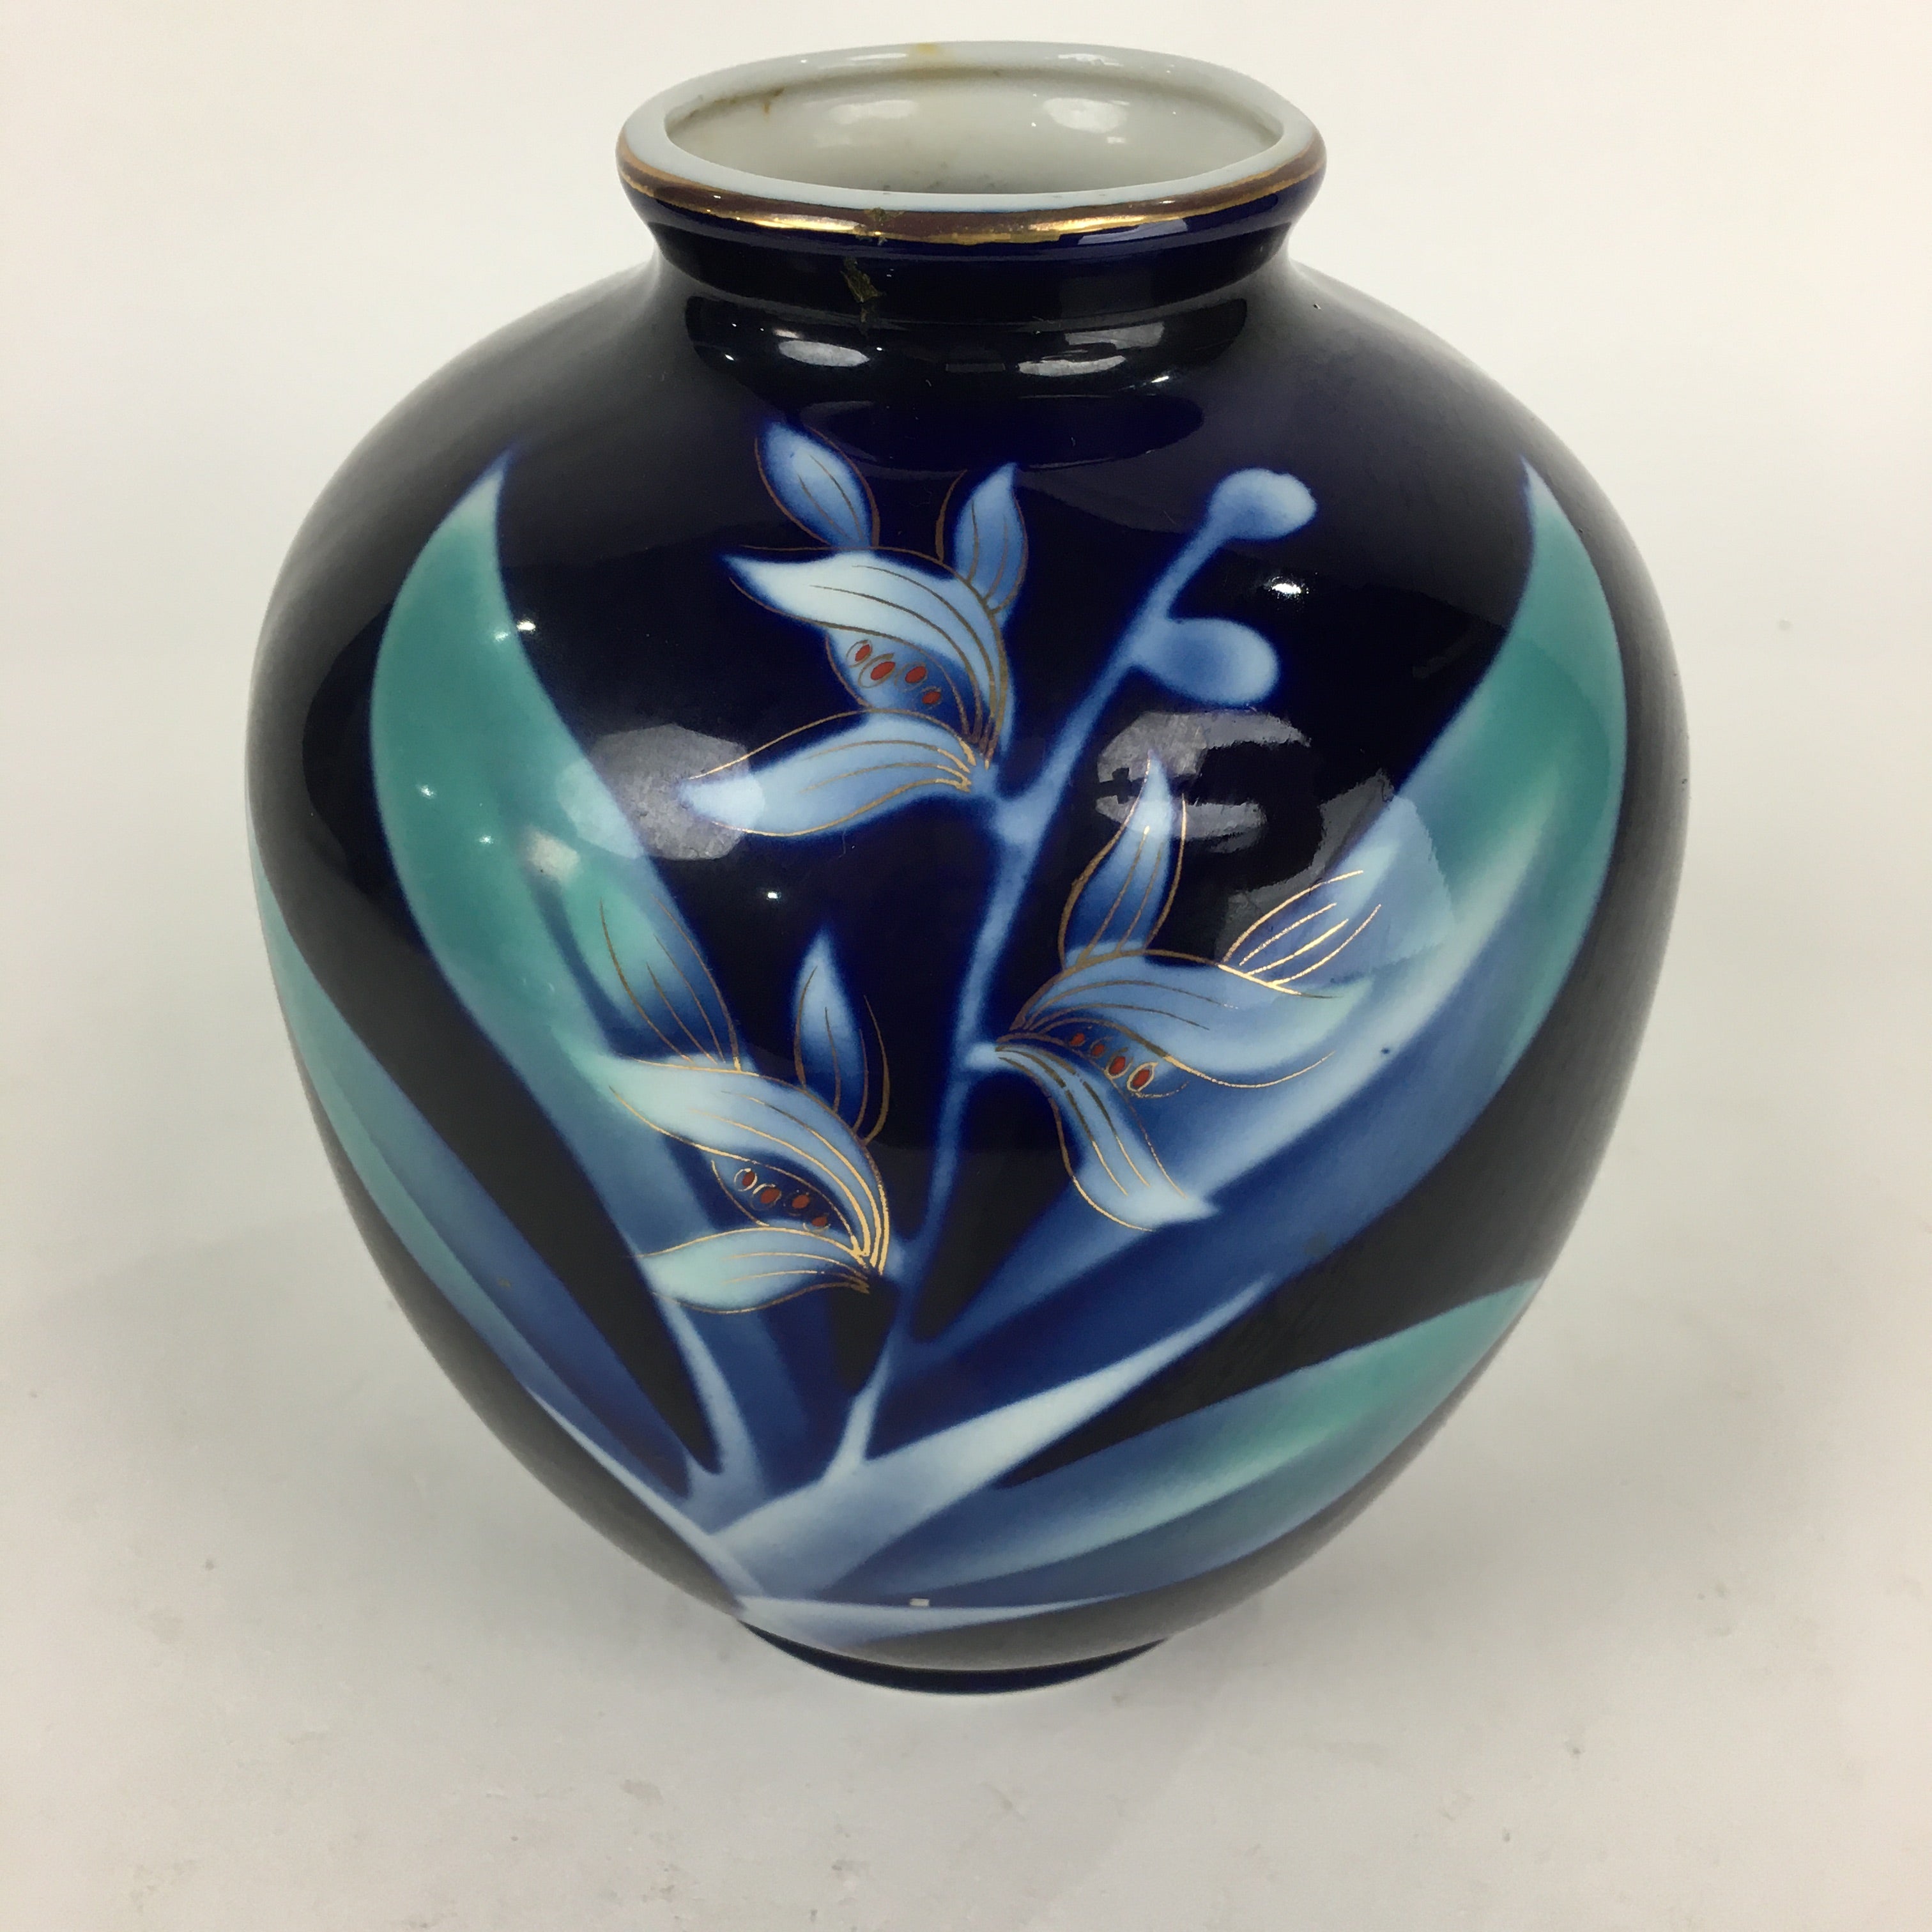 Japanese Porcelain Arita Ware Flower Vase Vtg Kabin Ikebana Arrangement FV992